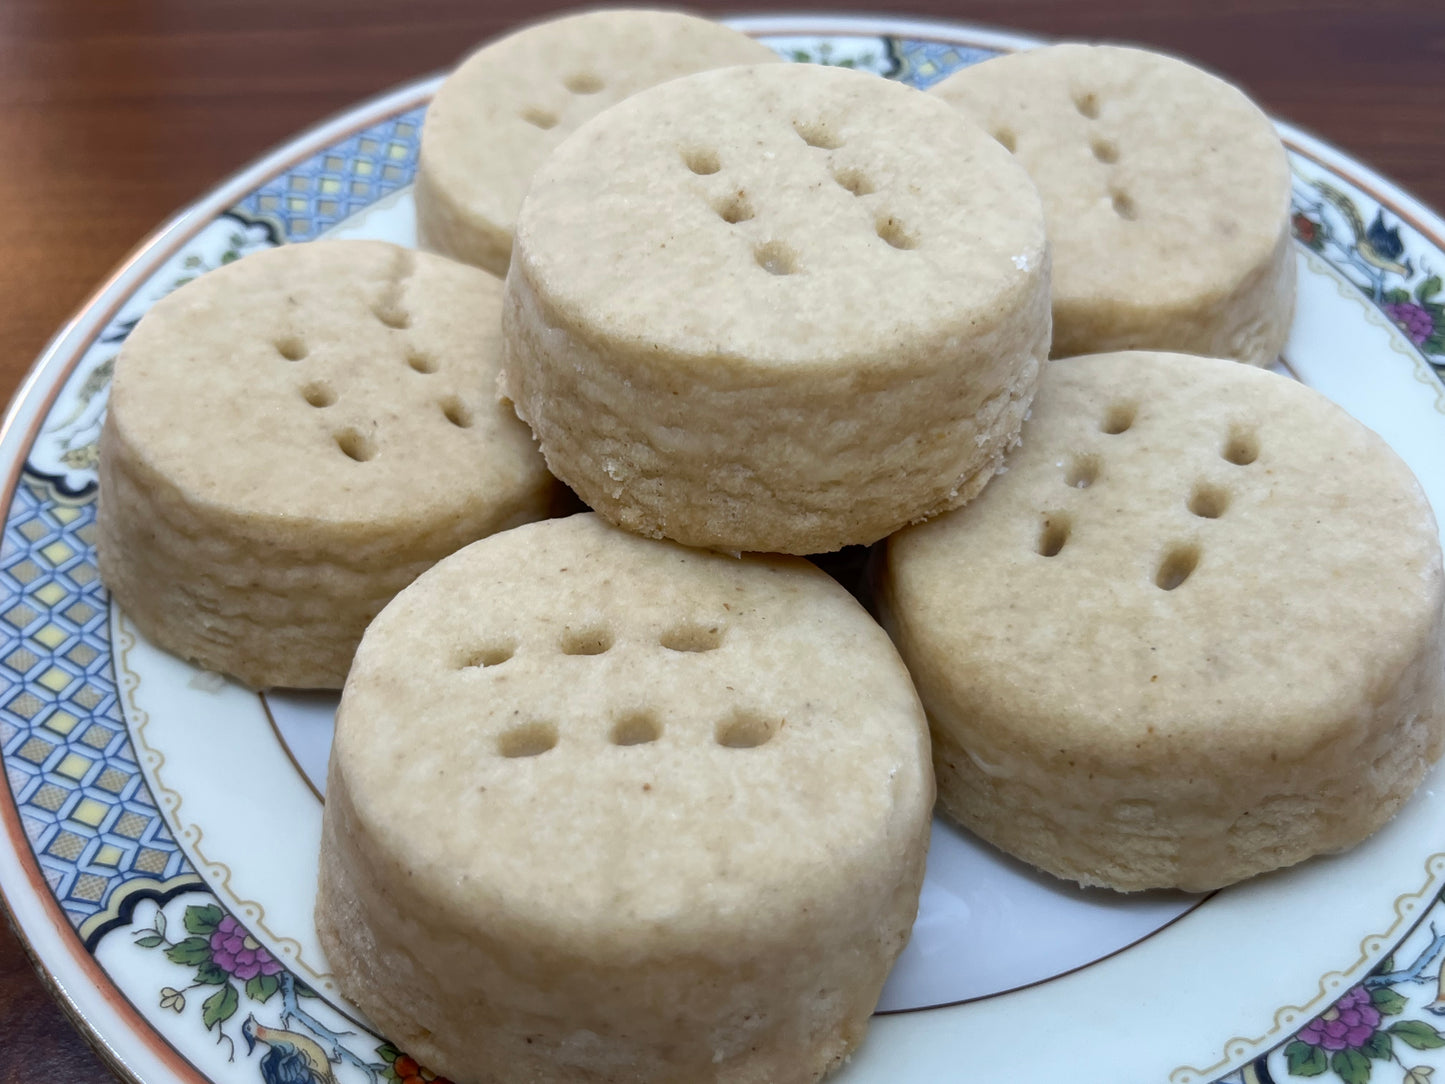 5. Caraway / BourbonGlaze Shortbread Cookies - 12 cookies